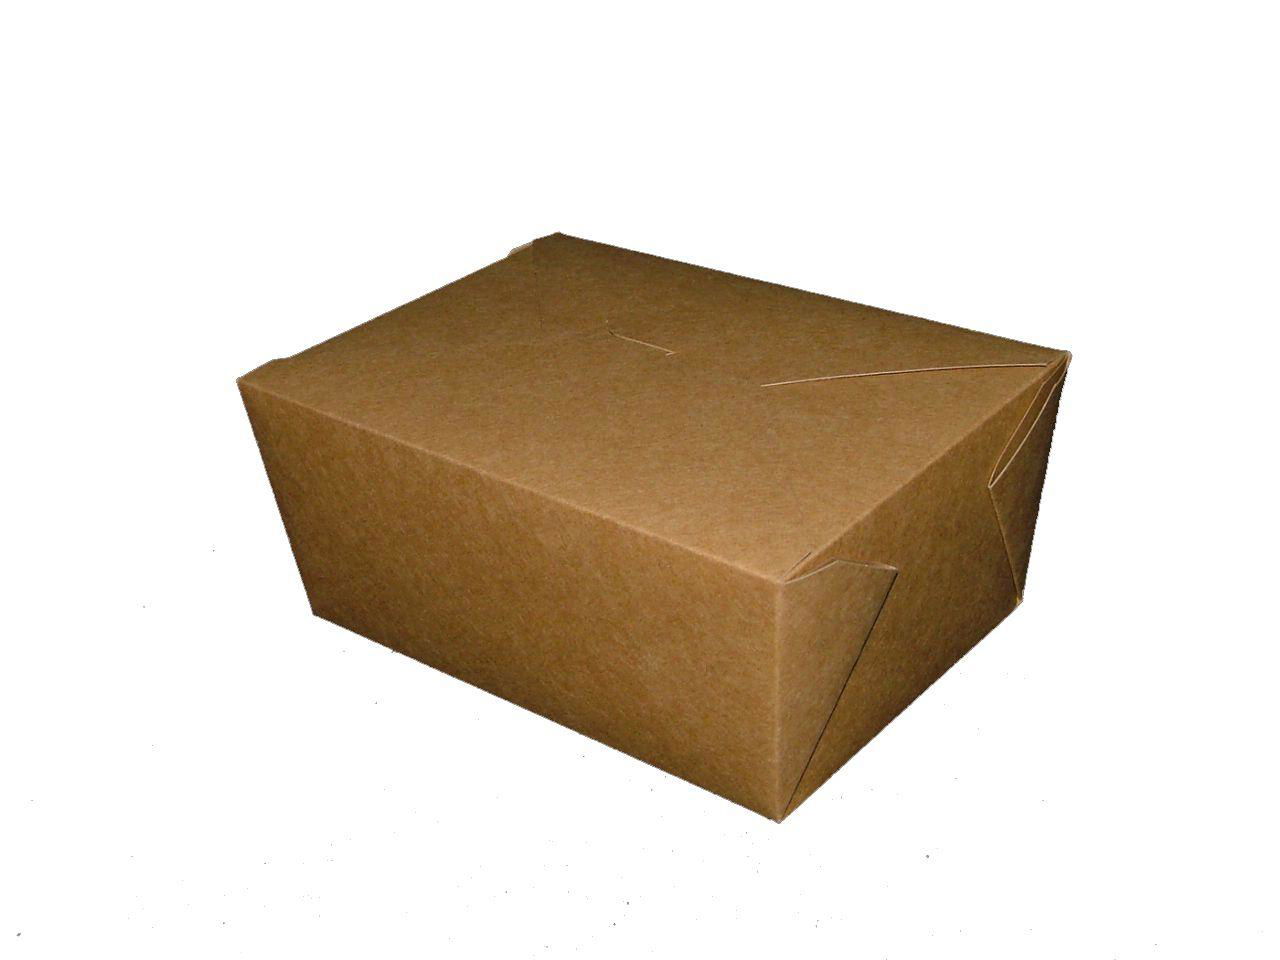 takeaway box